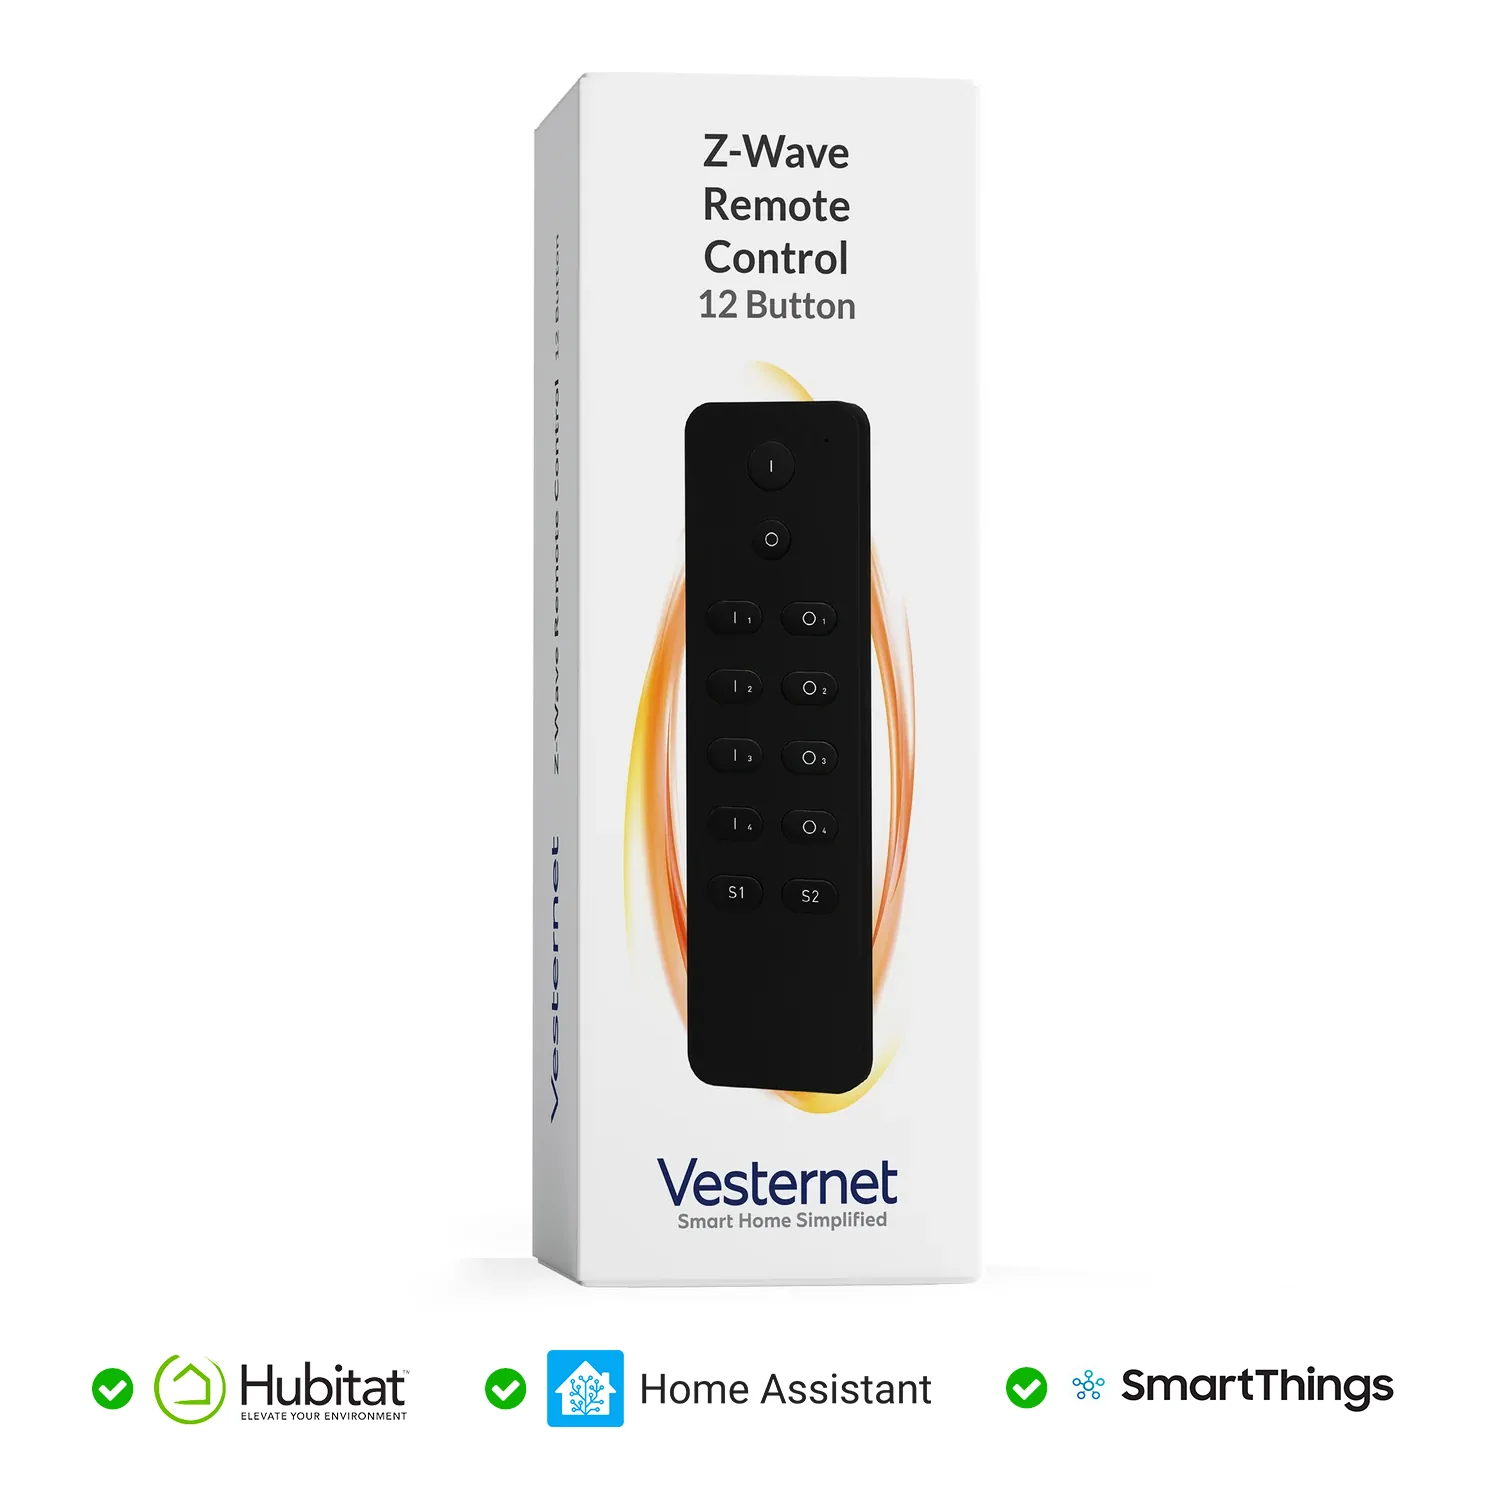 Vesternet Z-Wave Remote Control - 12 Button Questions & Answers